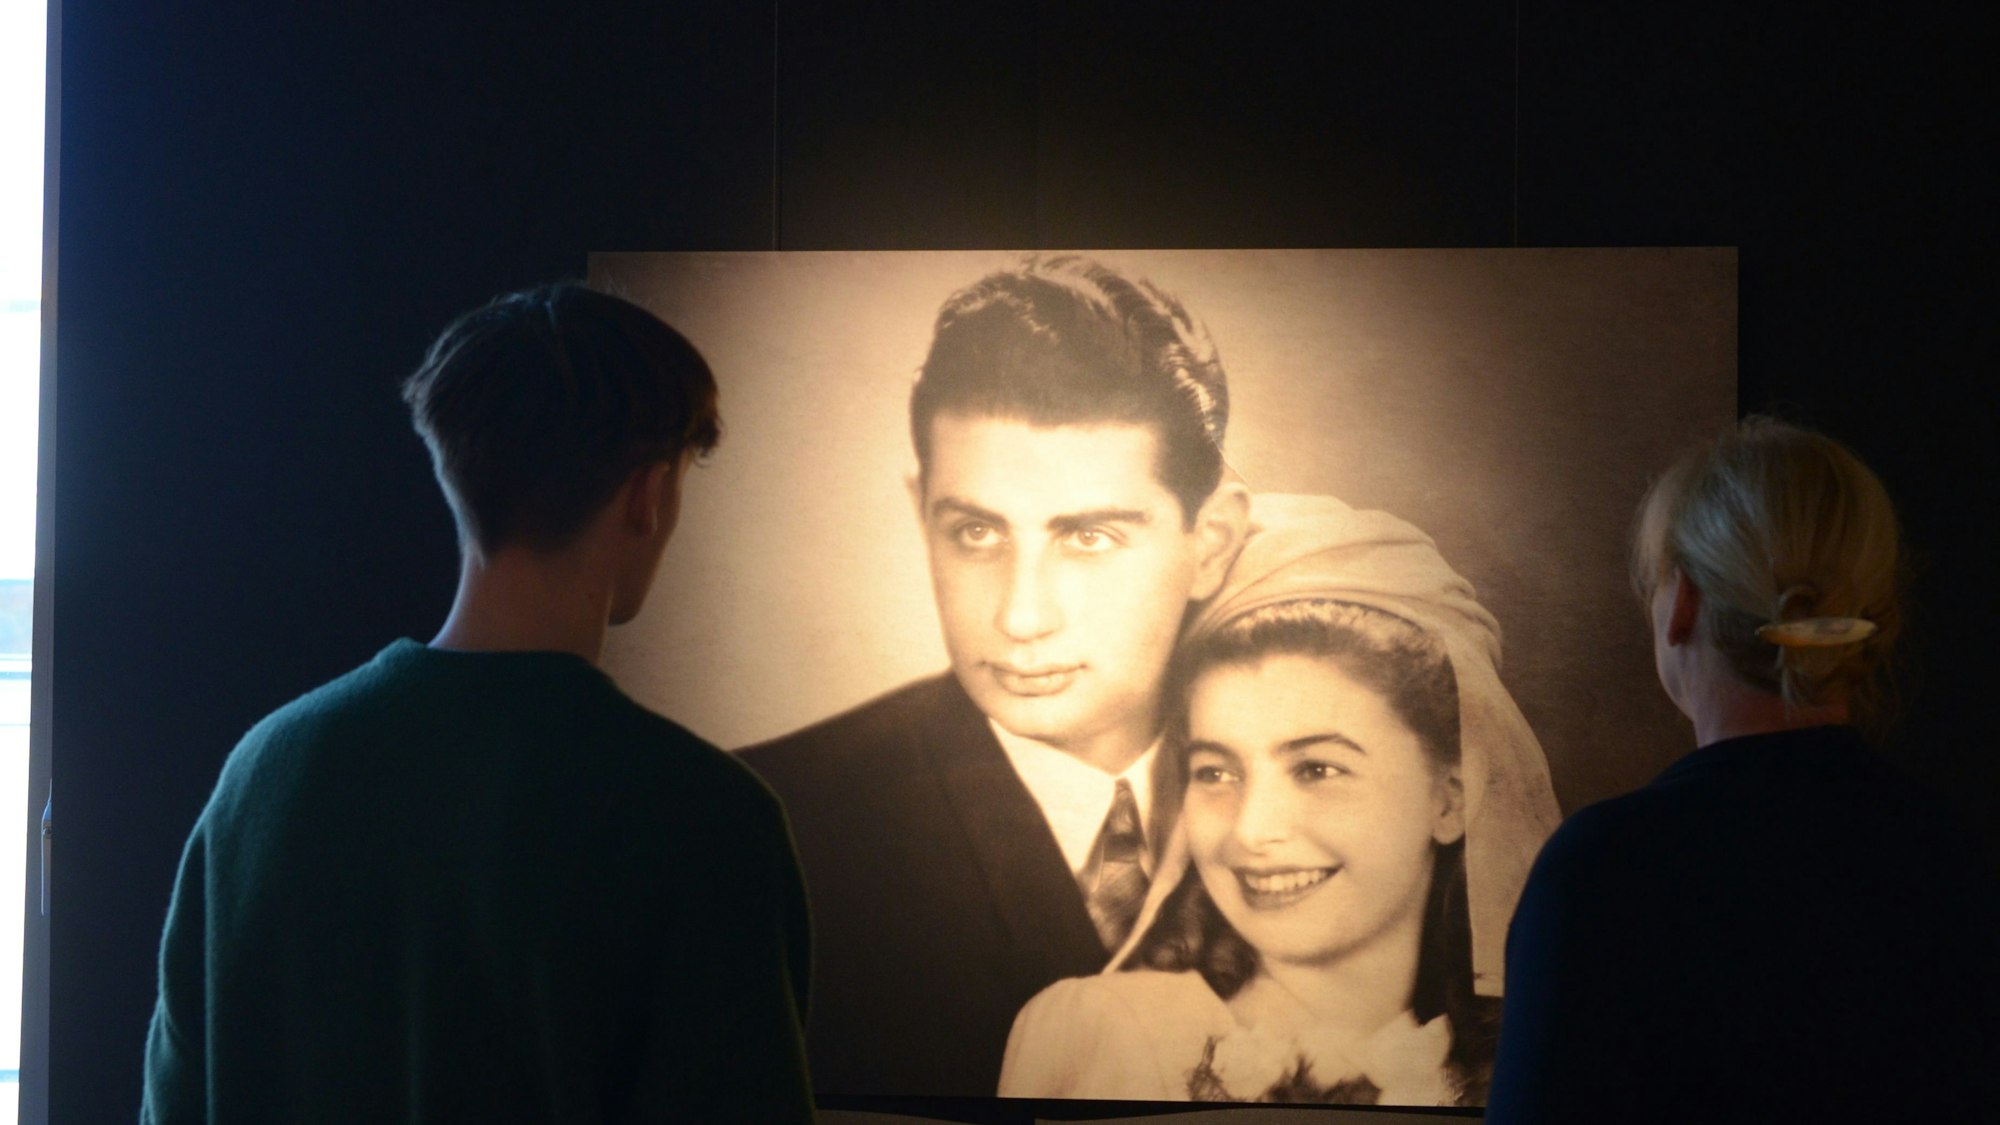 Eines der Bilder, eine Schwarz-Weiß-Aufnahme, zeigt Eleonora Nass und ihren Mann Jerzy. Die glücklich lächelnde Frau, die Lonka genannt wurde, ist die Namensgeberin der Ausstellung im Stadtmuseum.